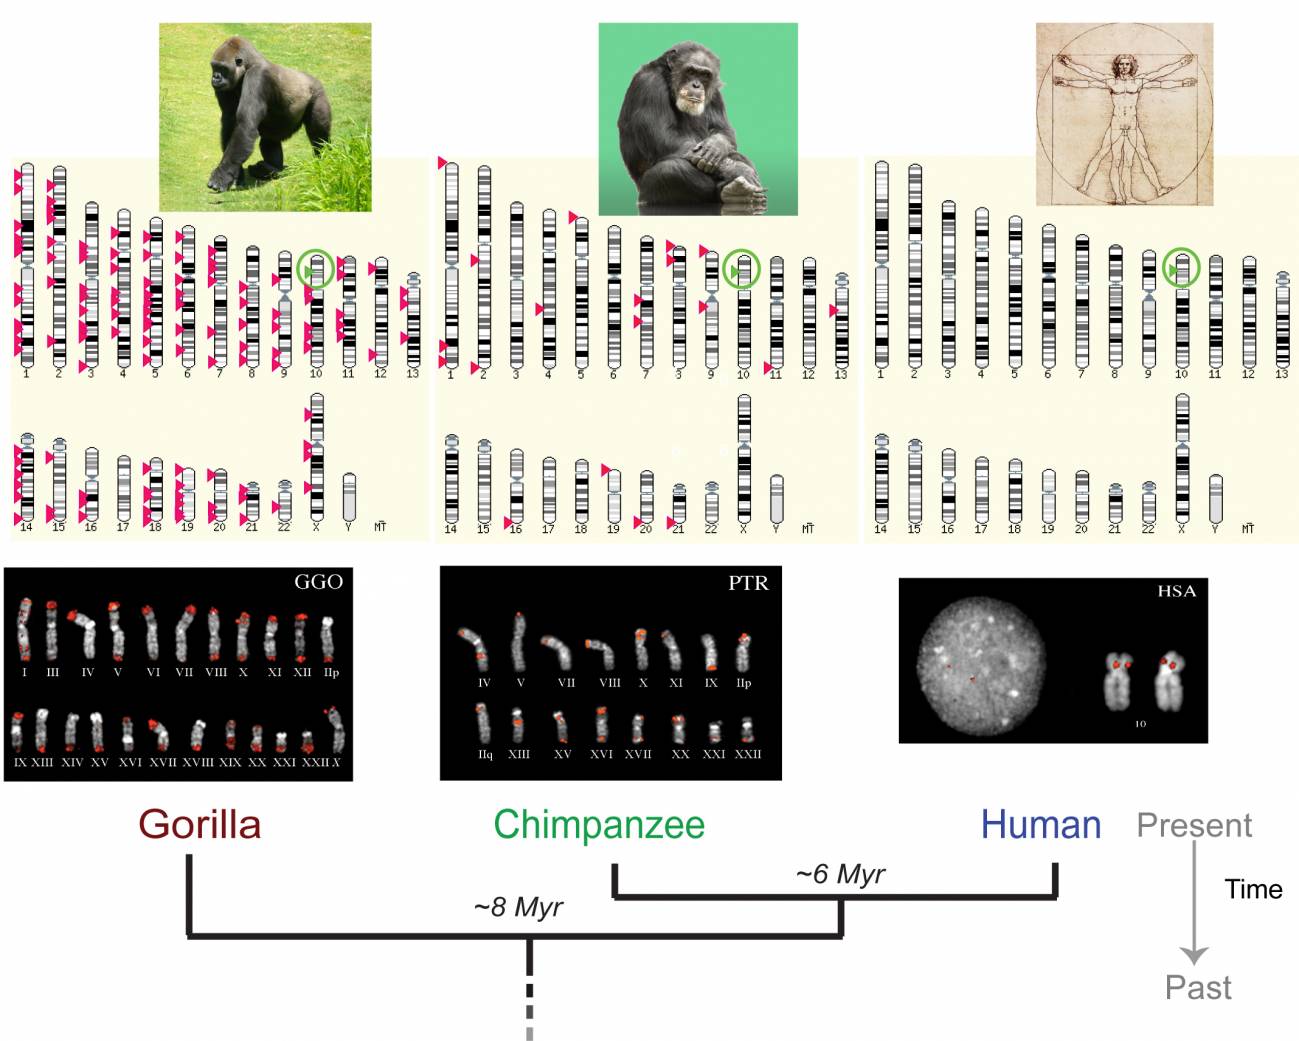 Las diferencias entre los genomas de los humanos y chimpancés son más grandes de lo que se pensaba